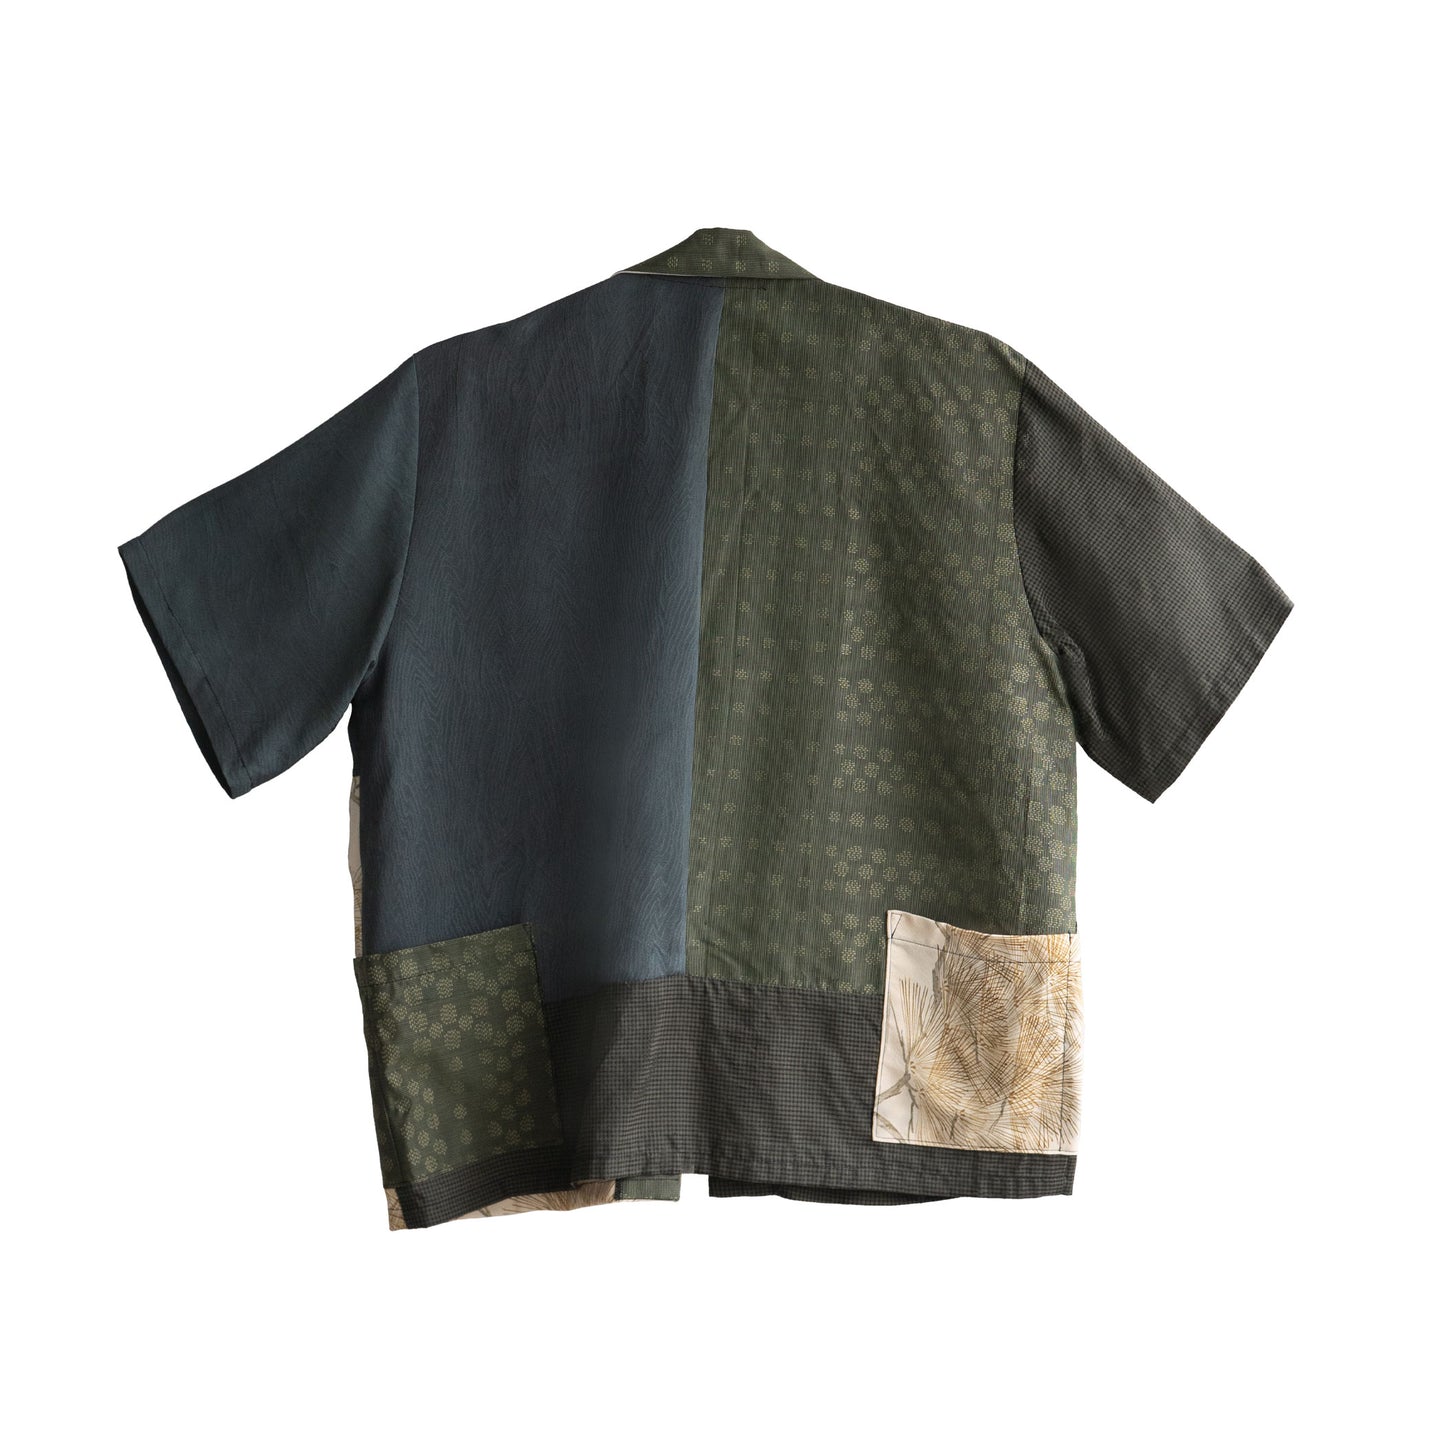 Kimono Working Shirts - Green 04 M